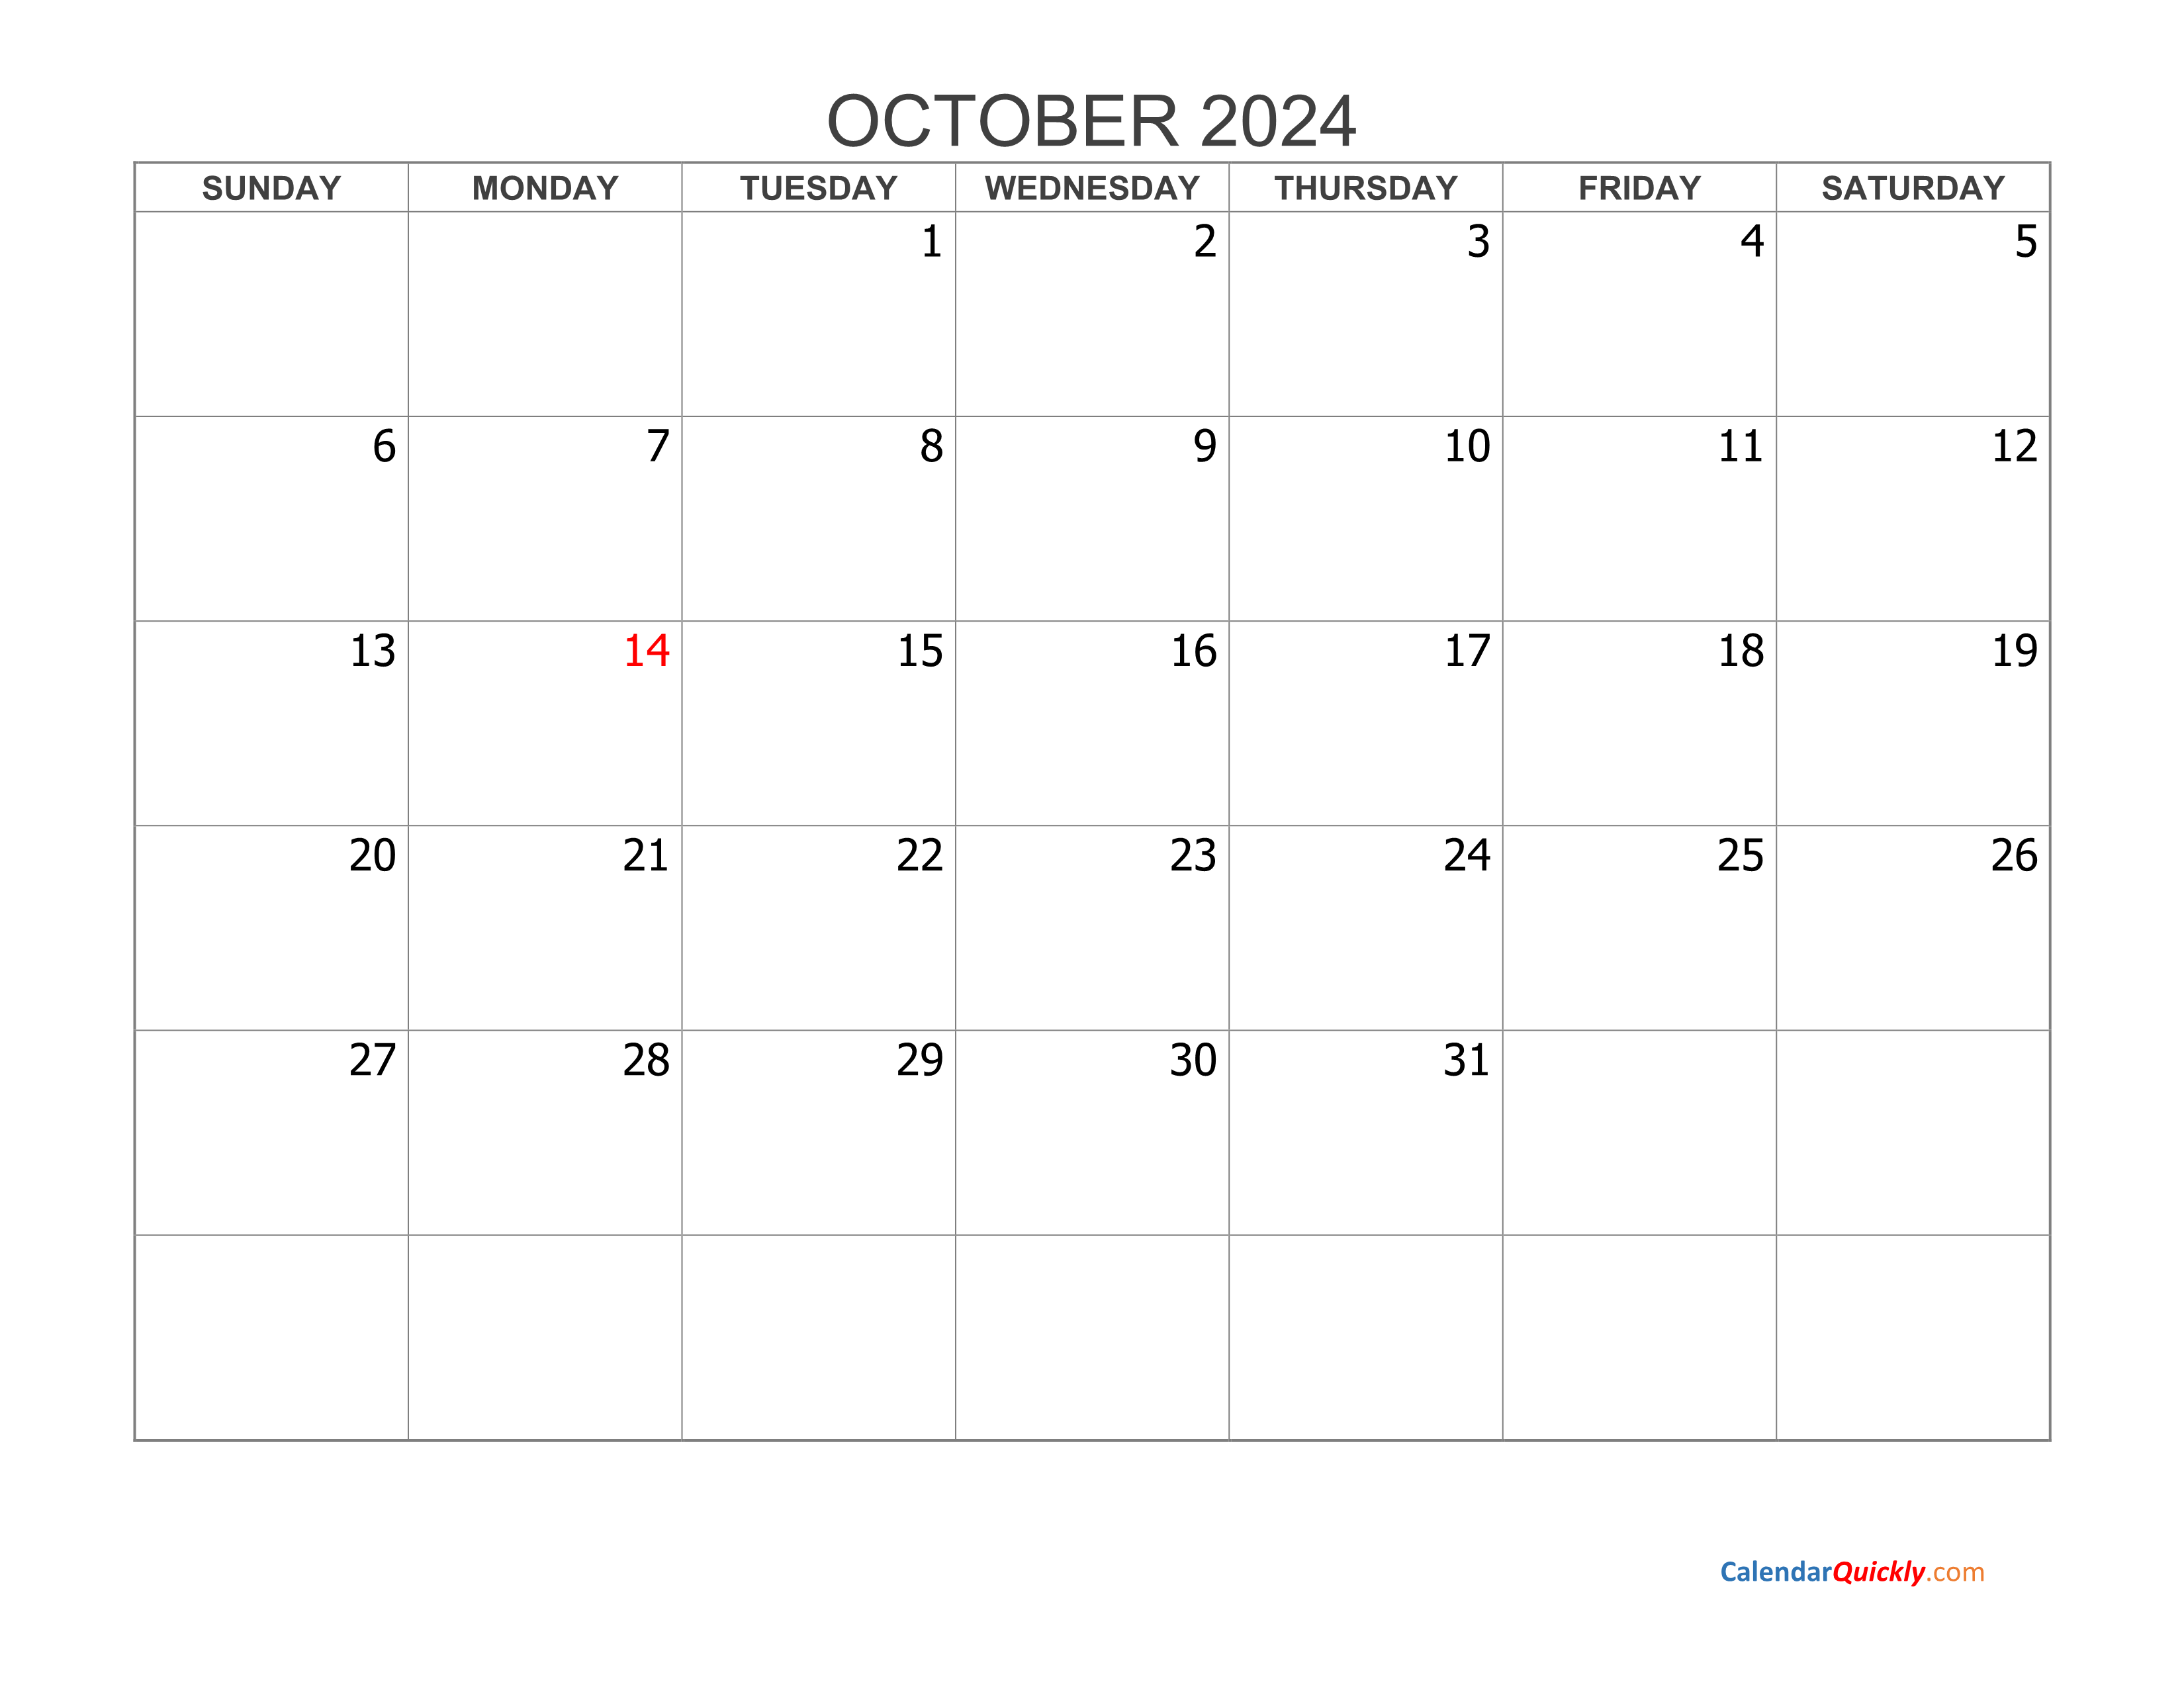 october-2024-blank-calendar-calendar-quickly